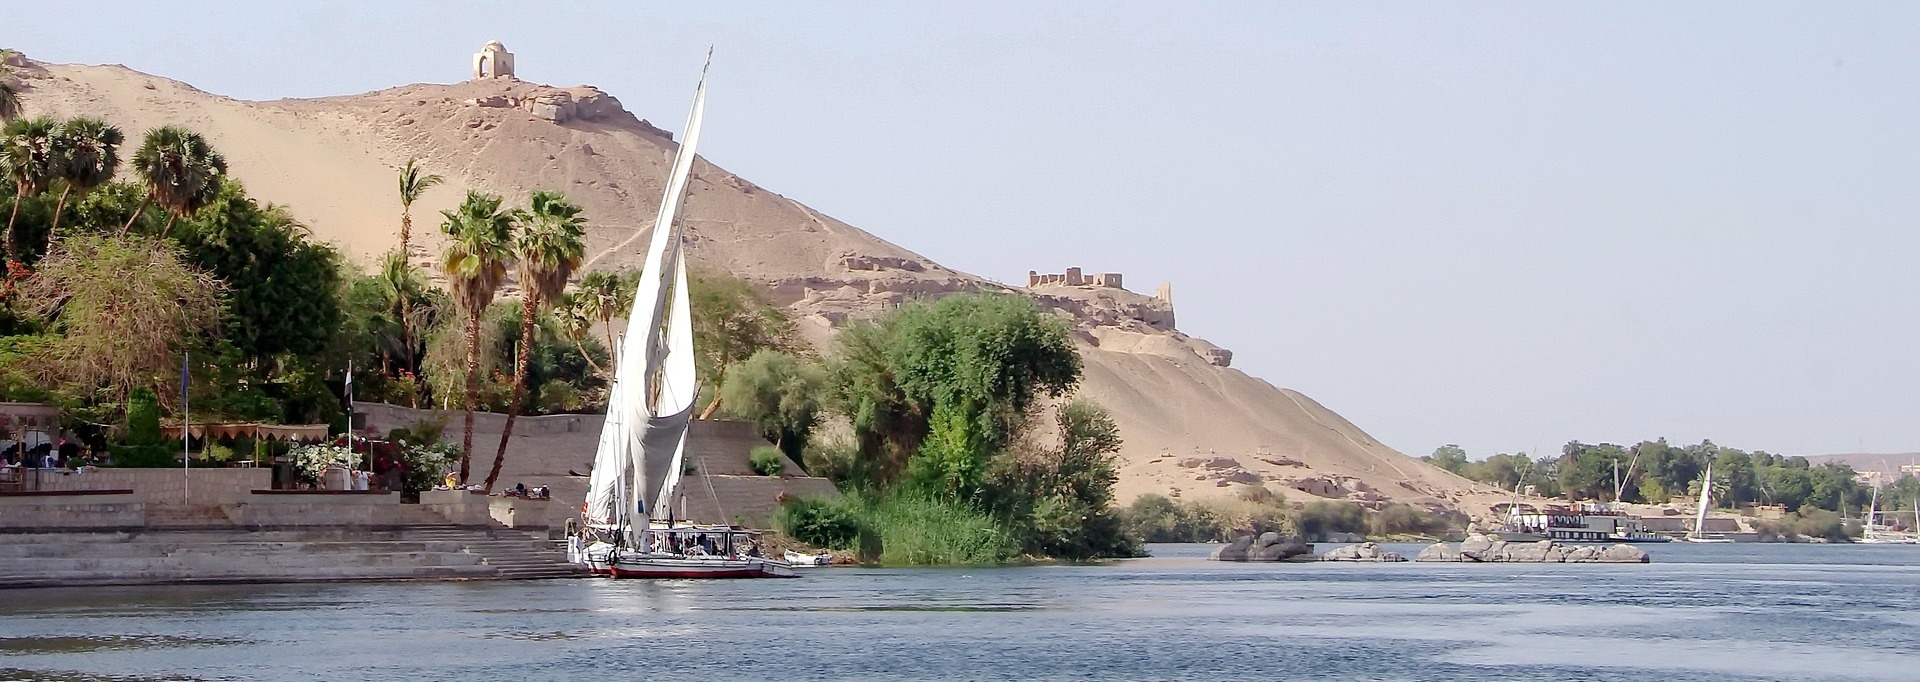 Croaziera pe Nil in tara Faraonilor